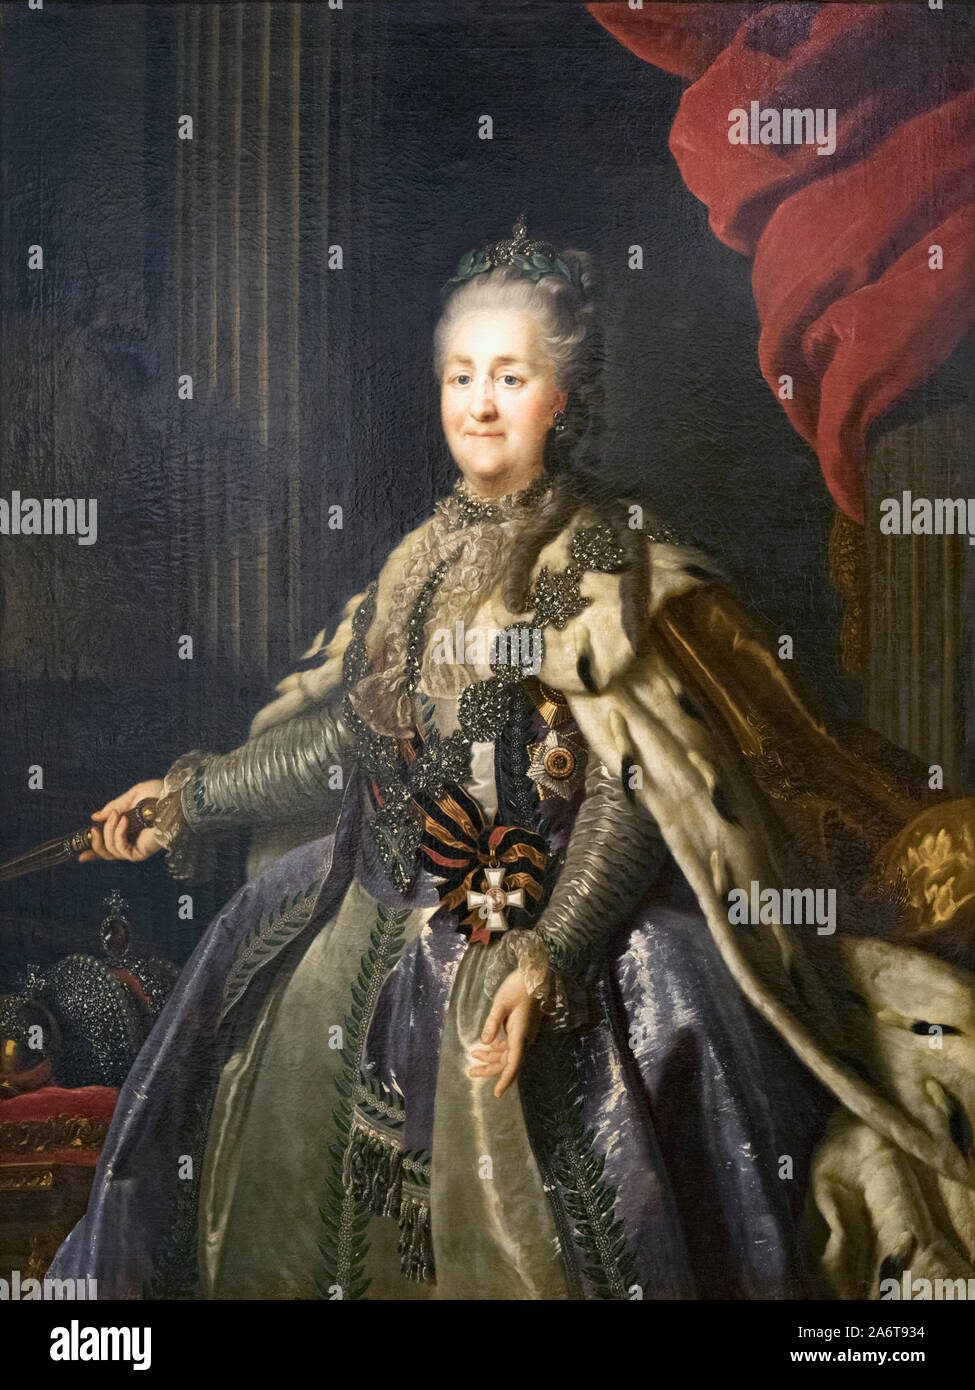 Portrait von Katharina der Großen von einem unbekannten Künstler. Katharina II., Katharina die Große, 1729 - 1796. Deutsche geboren Kaiserin von Russland. In t ausgestellt Stockfoto